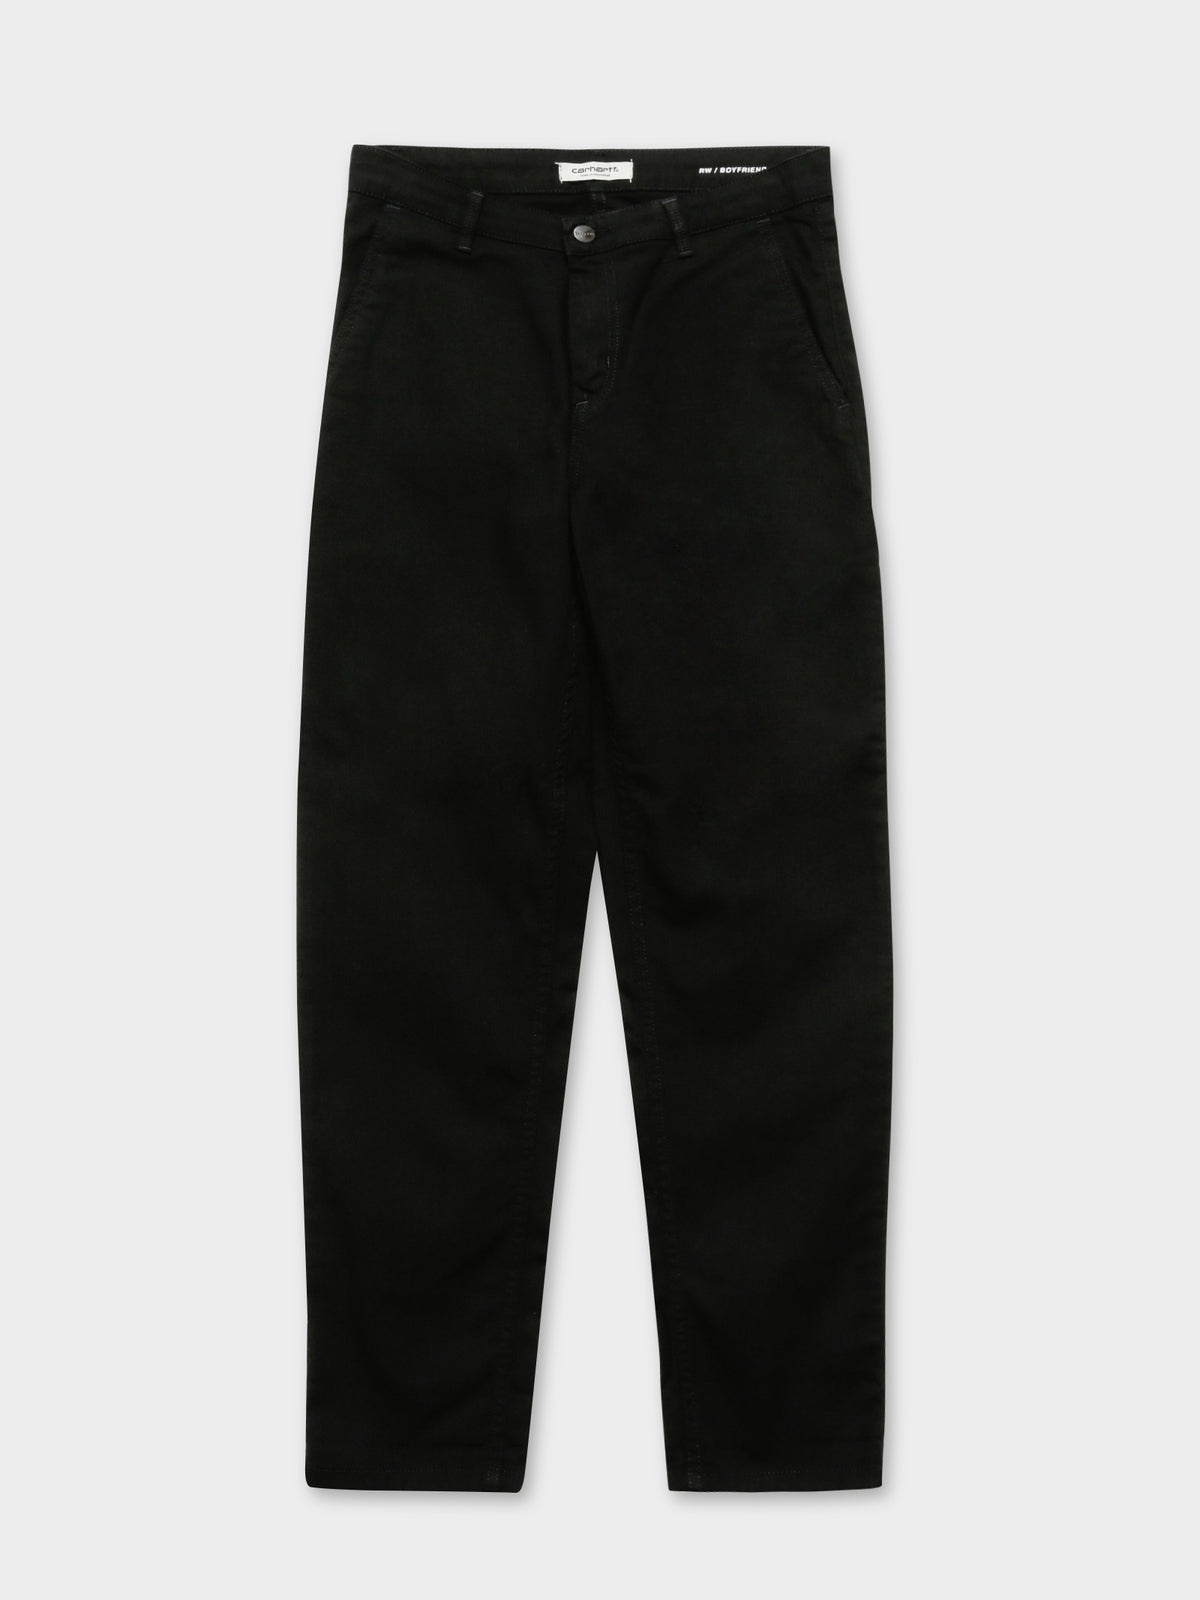 Pierce Pants in Black